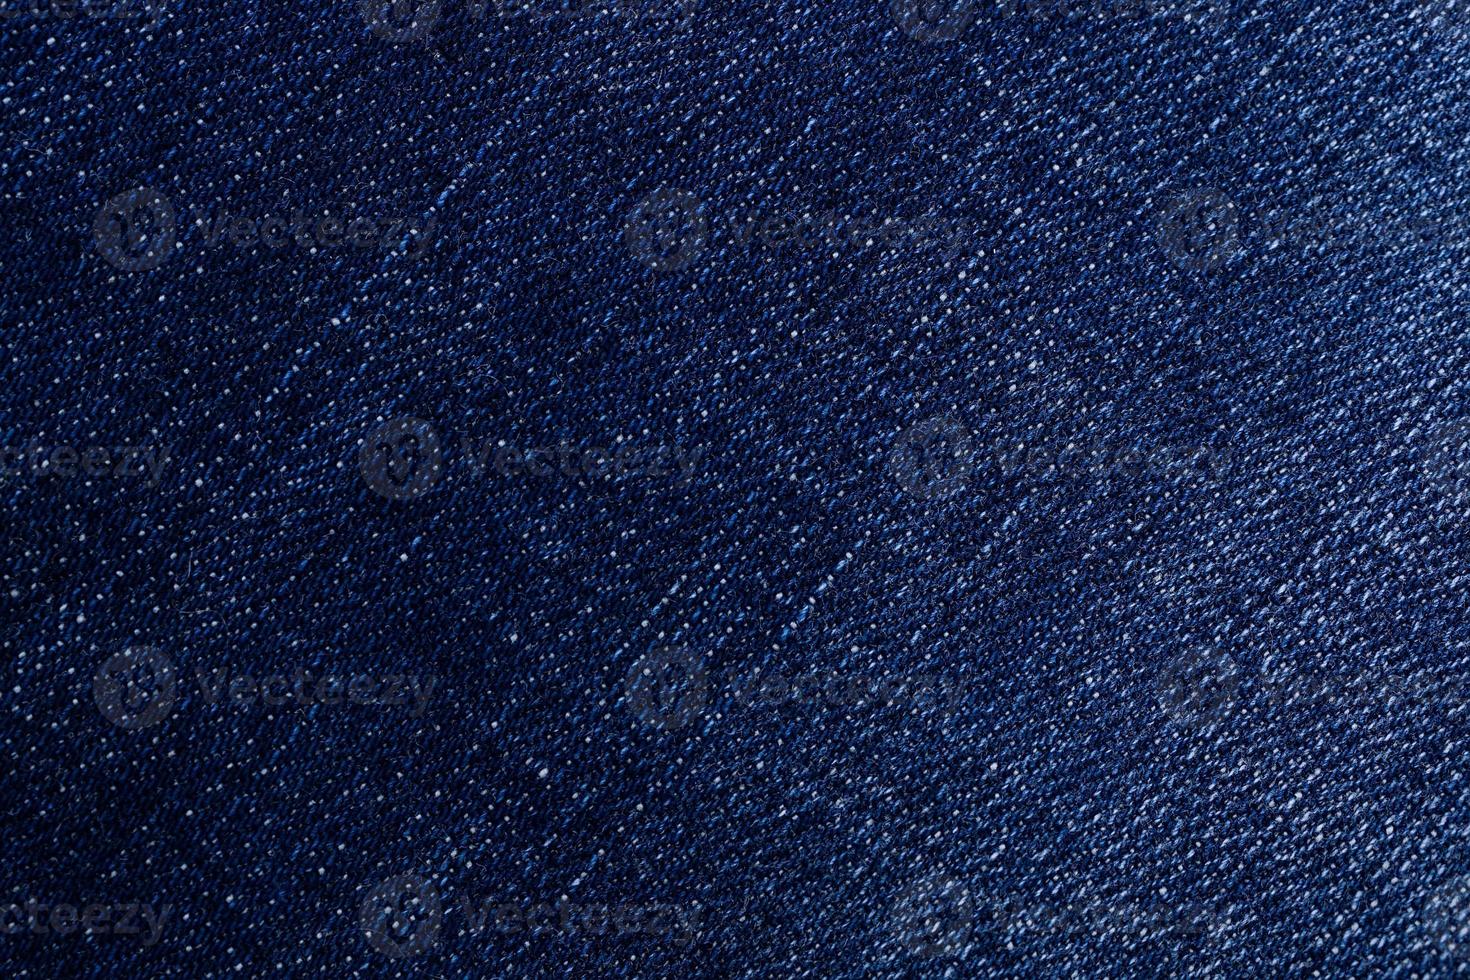 textura de jeans azul foto